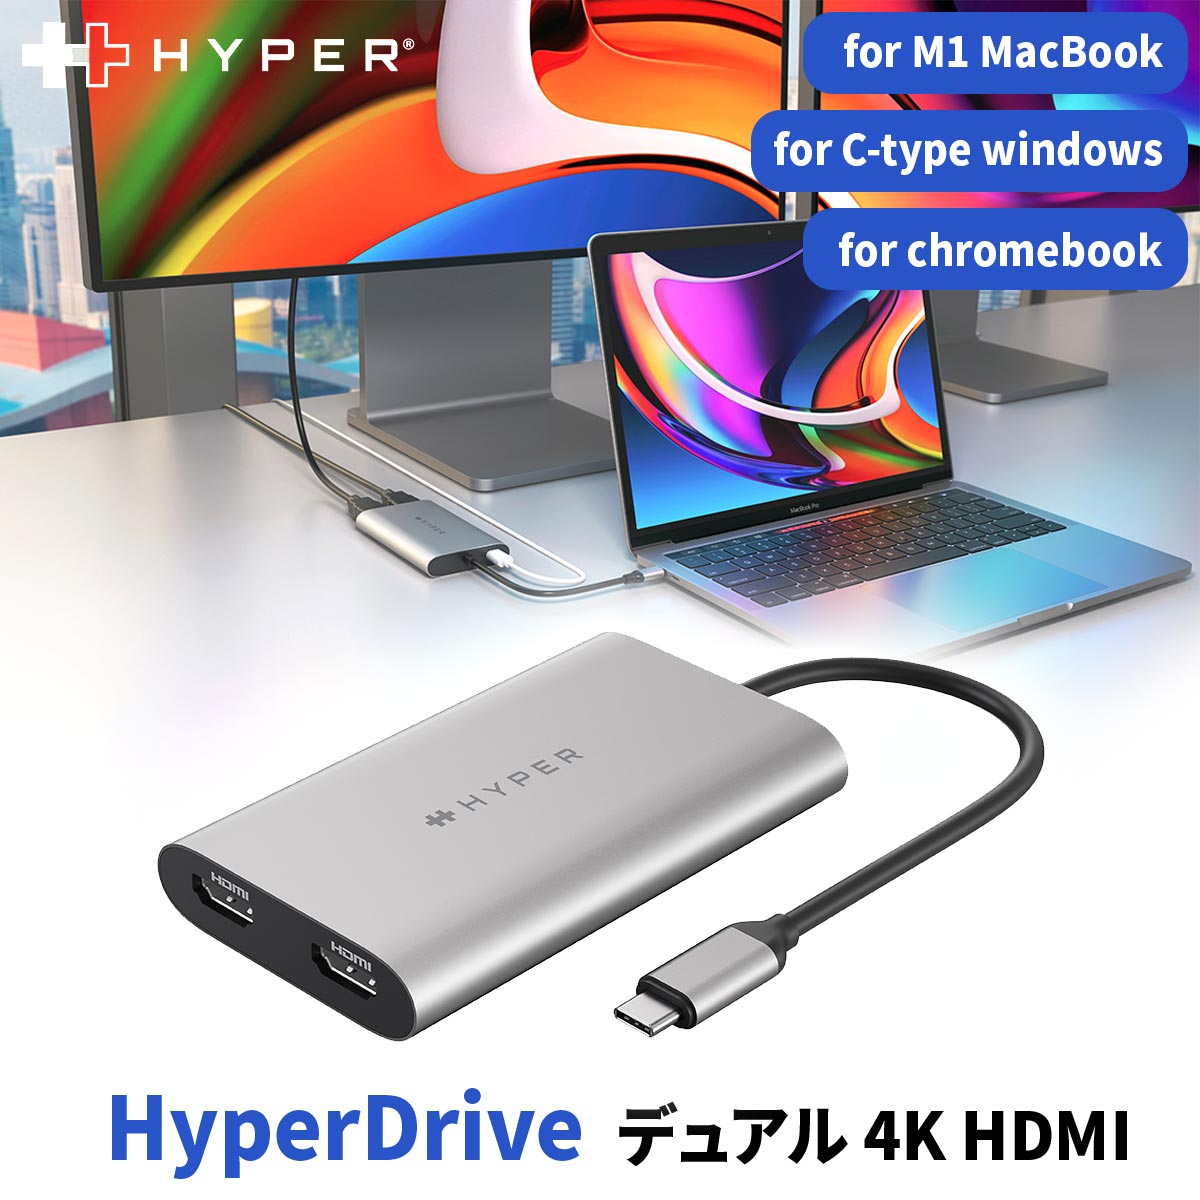 【正規品】 HyperDrive Dual HDMI USB ハブ 4K 60Hz 30Hz usb type-c hdmi 変換アダプタ for M1/M2/M3 MacBook Hyper USBハブ USBC デュアル モニター ディスプレイ ケーブル Windows Chromebook ipad 対応 USBC pd 対応 100w 充電 アルミ 在宅 テレワーク 会議